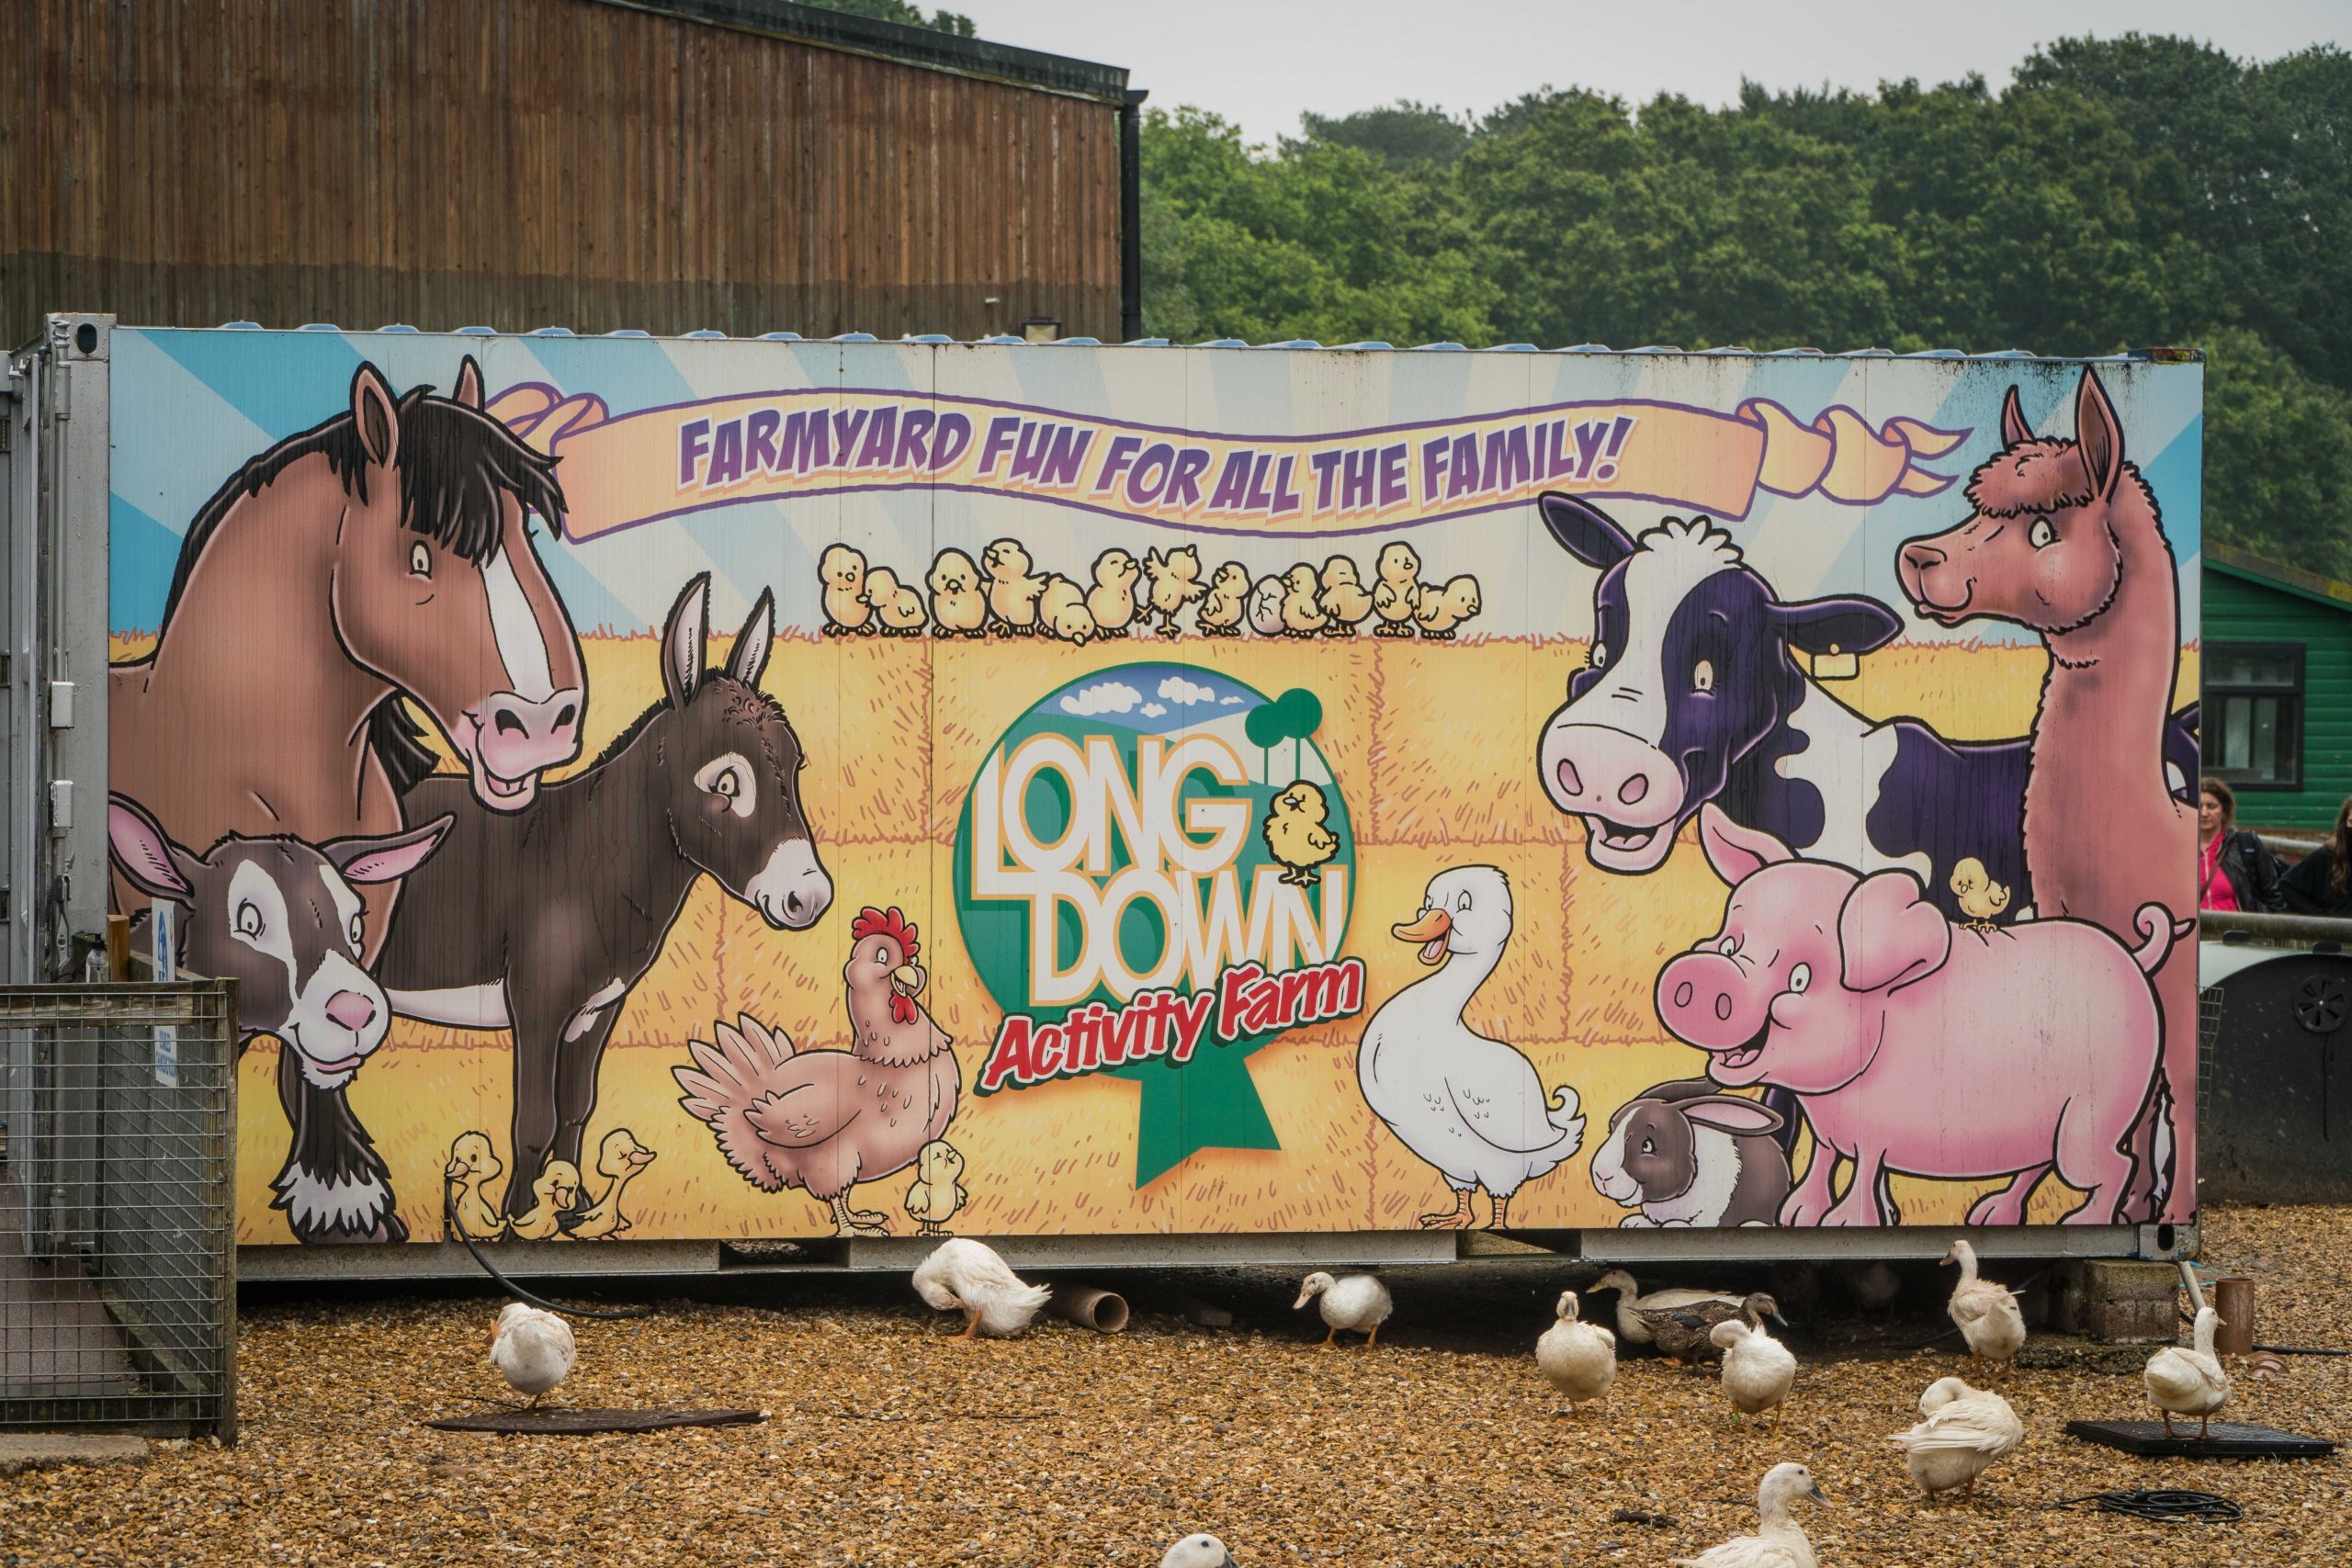 Longdown Activity Farm – A Complete Tour